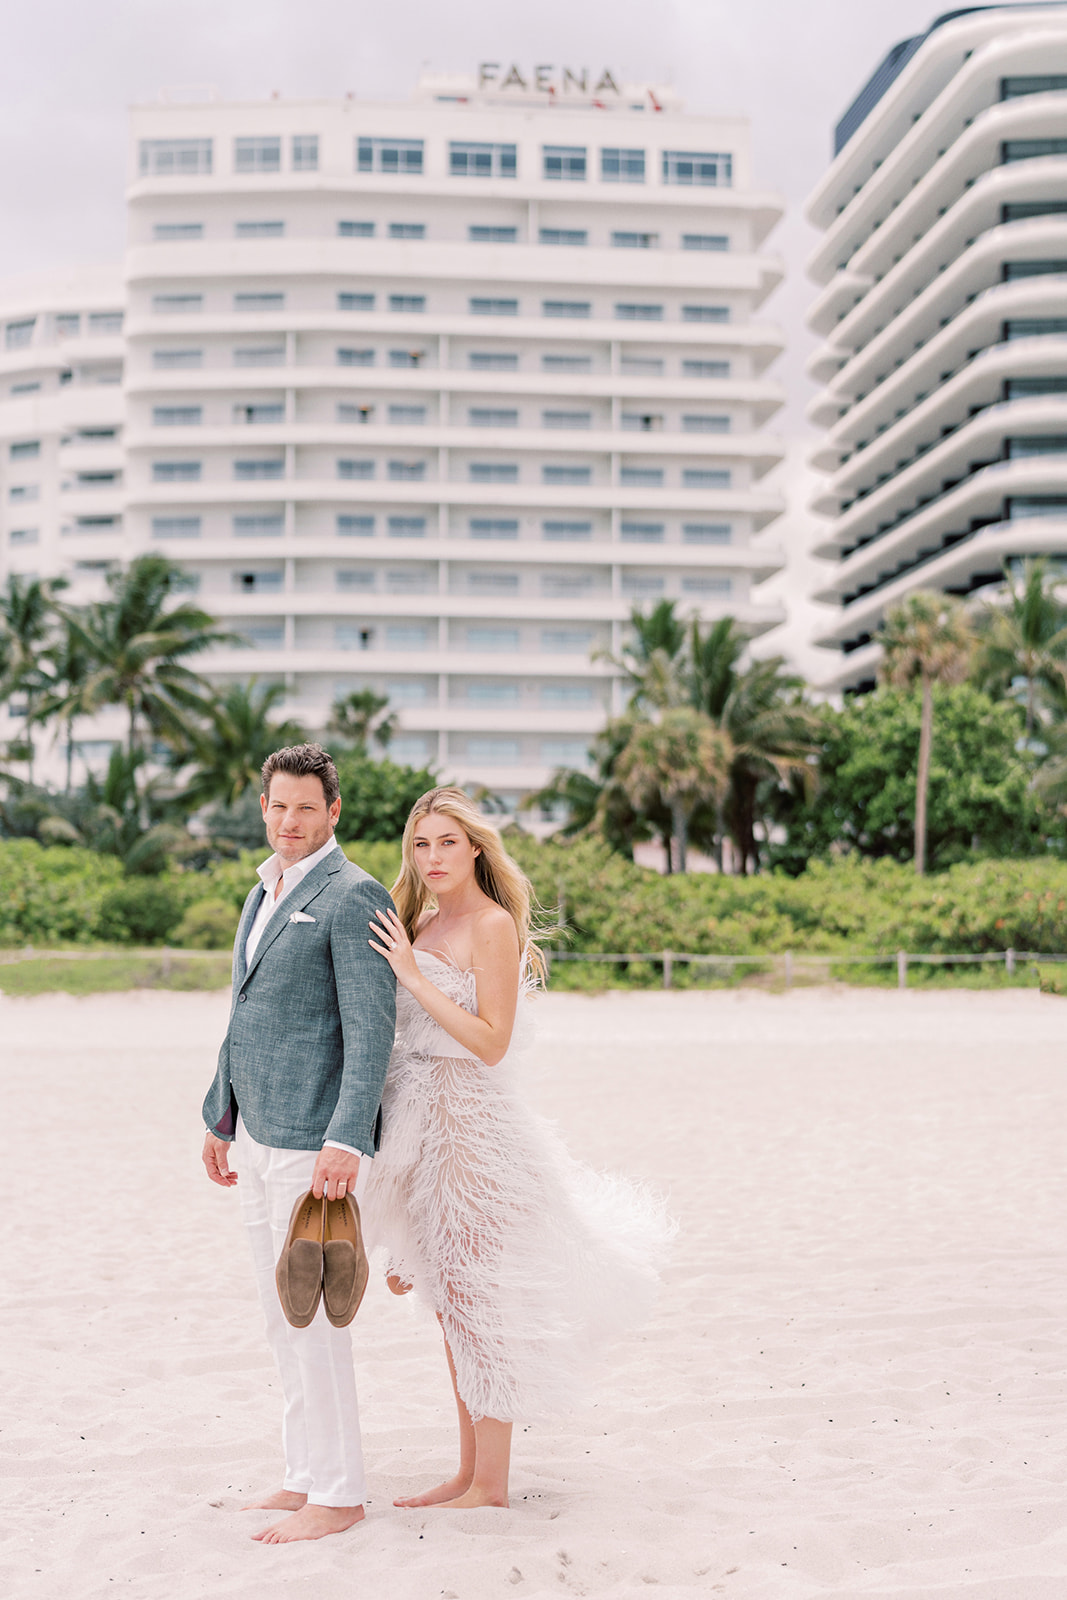 Faena Hotel Wedding, Faena Miami Wedding, Miami Beach Wedding, Miami Wedding Photographer, Faena Weddings, Miami Wedding